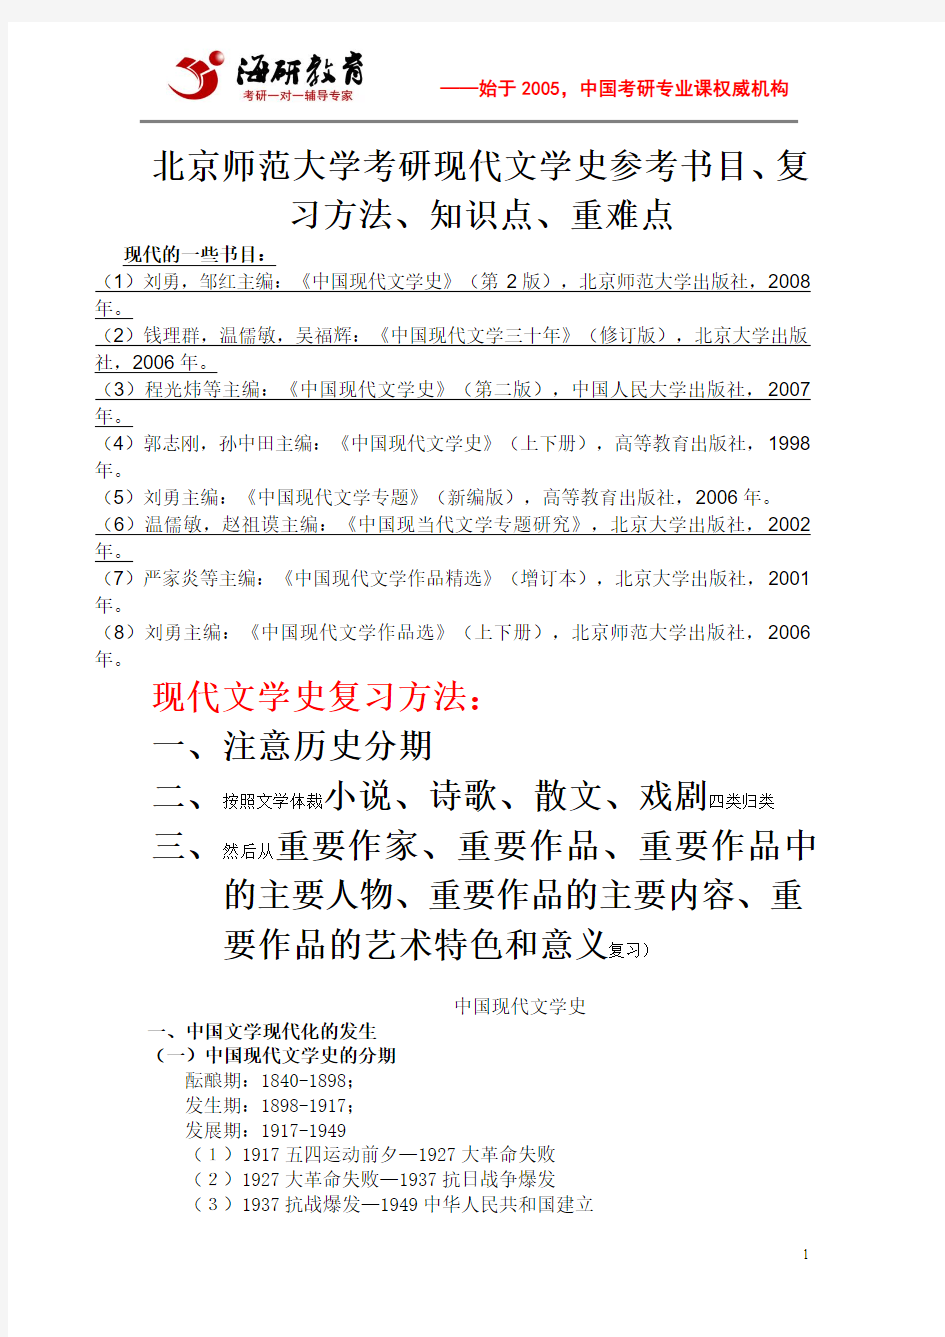 北京师范大学考研现代文学史参考书目、复习方法、知识点梳理、重难点